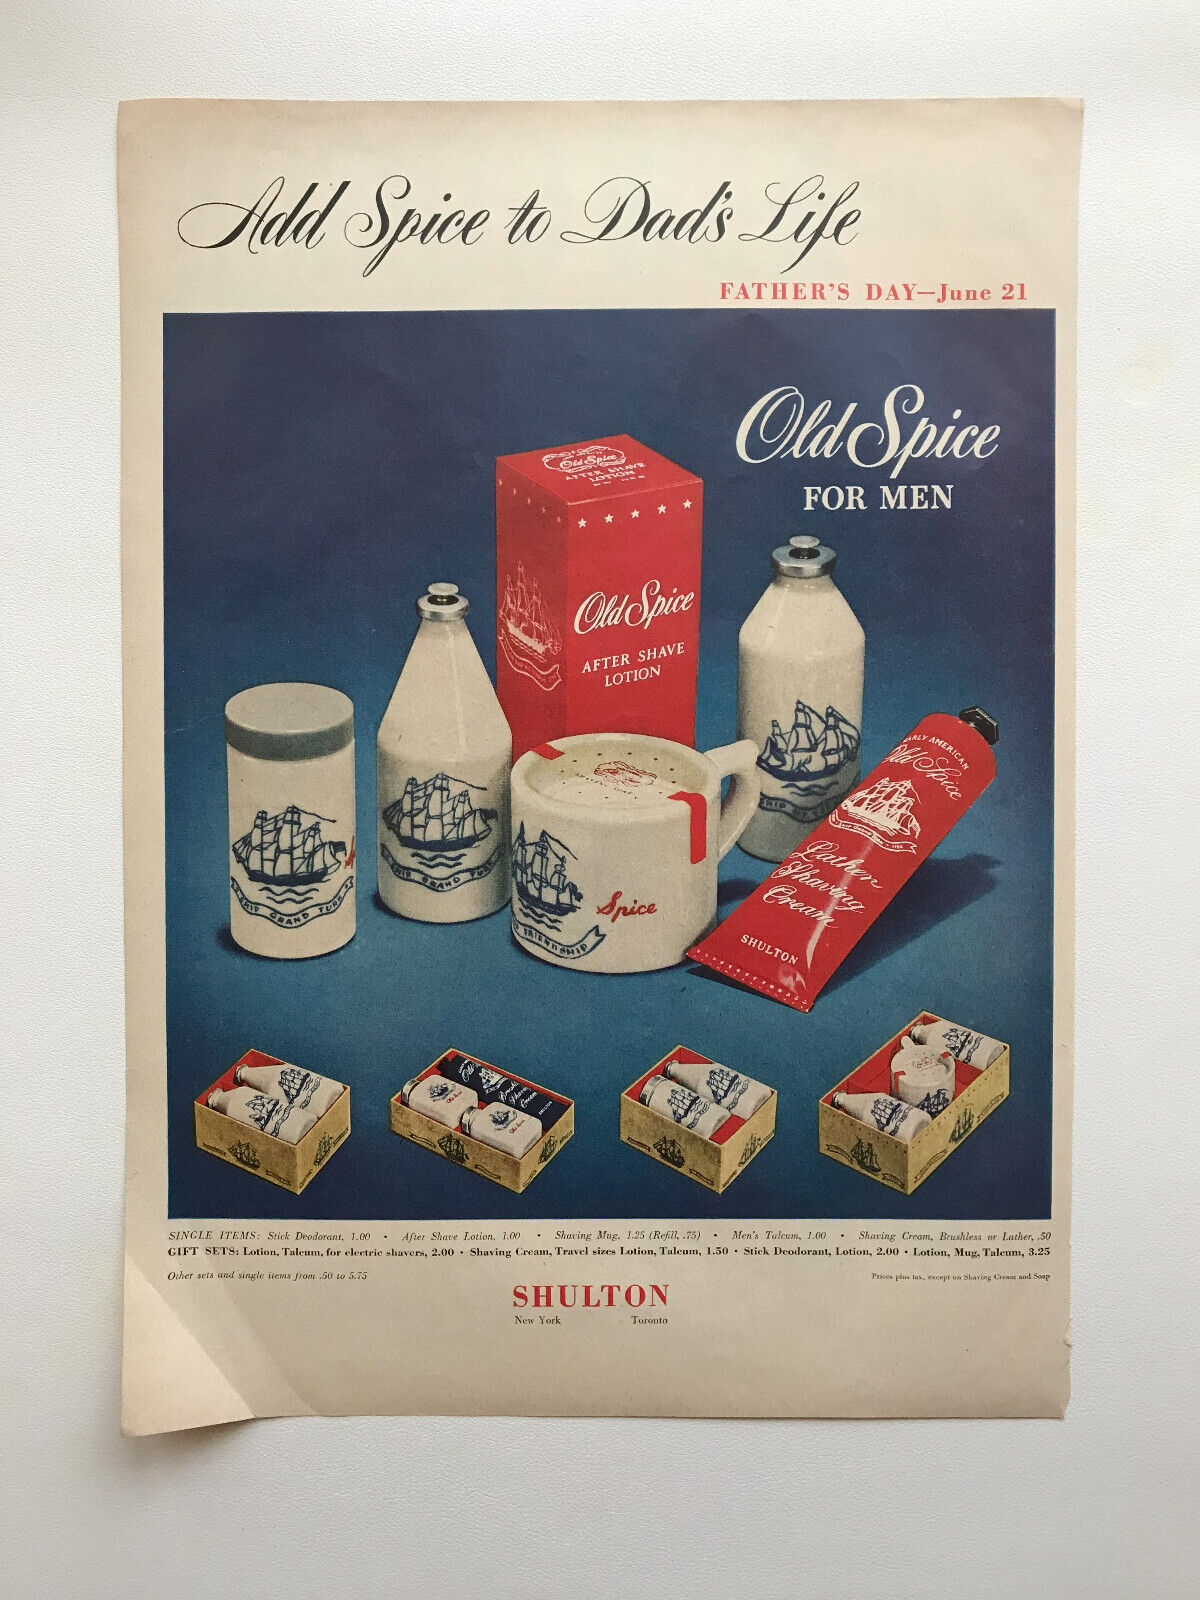 1953 Old Spice After Shave, Gibson Refrigerator Freezer Vintage Print Ads